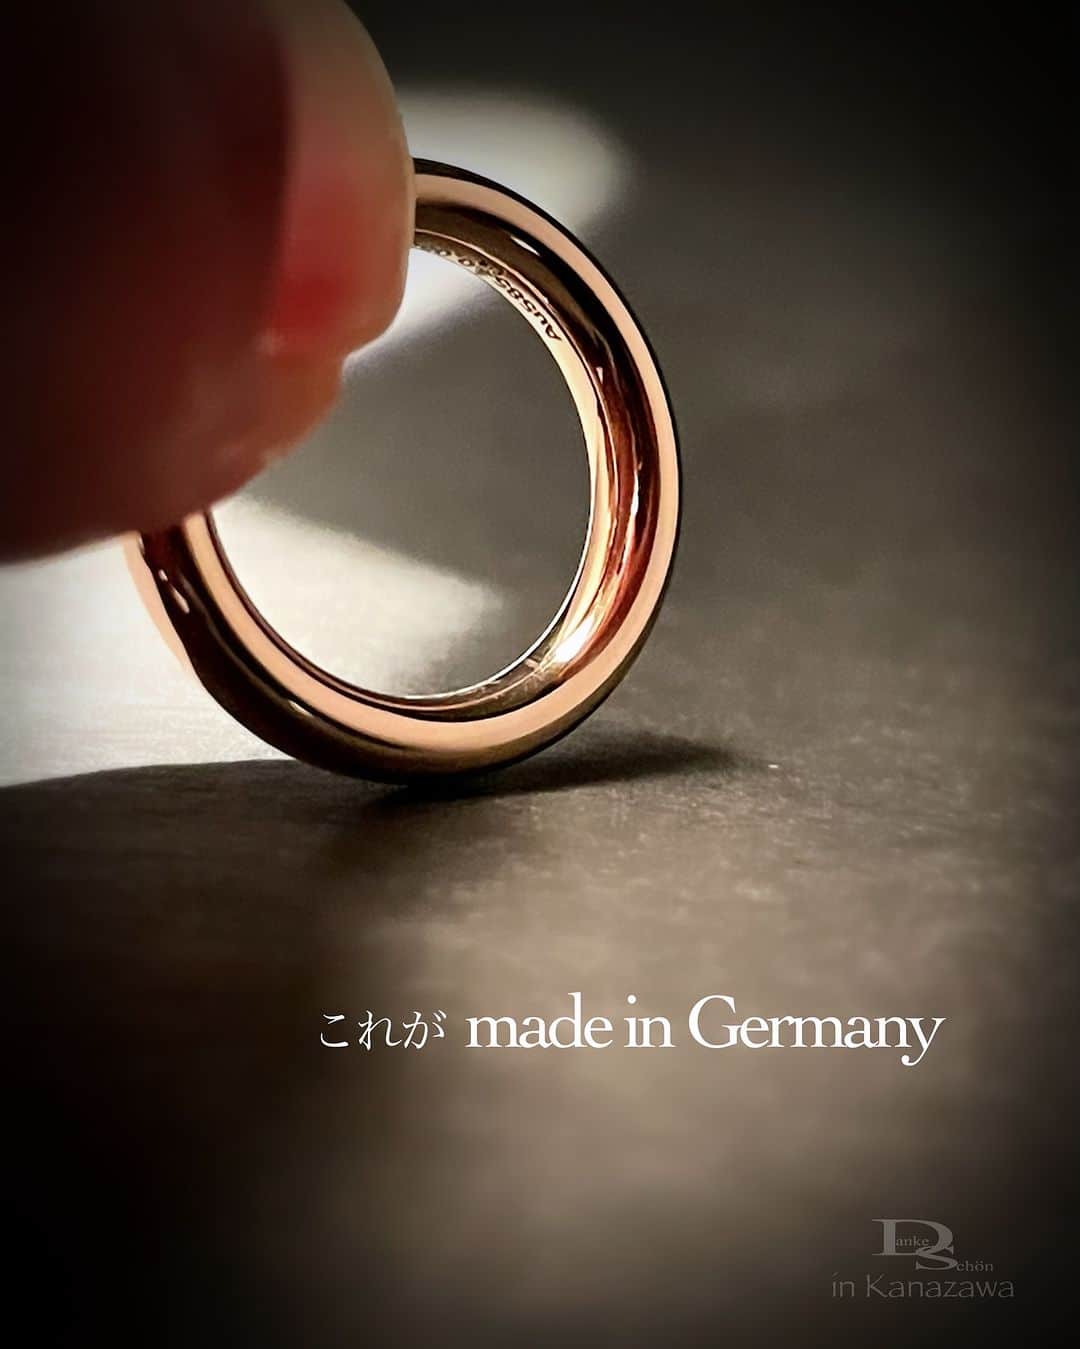 Danke schön ダンケ 金沢 結婚指輪 鍛造のインスタグラム：「・ ・ ハイ🙌🏻 今日のバウアーさんは コレにします。 ・ ・ 丸っと 艶っと ・ ・ そして🙌🏻 ・ ・ チュルンの指通り ・ ・ これって‼︎ 地金をただ鏡面加工にしたからと言って 艶っとする訳ではなくて ・ ・ 地金の密度が密っとじゃないと こんな風に艶っぽくはならない ・ ・ しかもこの指輪の作りの違いは 何年・何十年後に必ず「差」となり かえってくる ・ ・ 「キレイ」な指輪はたくさんありますが 「美しい」指輪となるのです。 ・ ・ 「艶」では無くて「照り」が 堪らないのです🤭 ・ ・ 「傷」では無く「味わい・風合い」が 堪らないのです💘 ・ ・ 携われば携わるほど感じるのですが クリスチャンバウアーの指輪って ・ ・ 買って直ぐ 使って直ぐ ・ ・ お値段の違いが分からないから もどかしい反面 伝え甲斐のある指輪だと ・ ・ 寧ろ何年後 何十年後ふとした時に ・ ・ 「あれっ」と思いマジマジ指輪を見て なるほどこう言う事だったのか…と気付く ・ ・ その時に初めて 選び抜いて良かった「事」を実感 ・ ・ そこから先は指輪が 愛しくて愛おしいくて堪らなくなる ・ ・ 裏を返せば選び抜いたからには そこまで「使い込んで」欲しいのです。 ・ ・ きっと全ての感情の順番が逆で 訪れて来るのがバウアーさん ・ ・ コレを購入前に見抜けるか 見抜けないかの差はなんだろうね？ ・ ・ コレを伝え切る面白さが私の役目😆 私の腕💪の見せ所じゃなくて このオクチにかかってる🤭 ・ ・ 同じバウアーさんであっても どう捉えた人から話を聞くかで ・ ・ その後のお客様にも大きい差になるのだと 私は思っています。 ・ ・ それらもひっくるめて全てが逆になって 自分にかえってくる指輪。 ・ ・ これがDanakeが捉えた 「クリスチャンバウアー」です。 ・ ・ ・ ・ ・ 【工業系 鍛造削り出し】 🇩🇪クリスチャンバウアー 専門店 ・ ・ ワンランク上をいくノウハウの クリスチャンバウアーの選び方なら 『Danke schön 』 ・ ・ ・ —— 𝐃𝐚𝐧𝐤𝐞——— ▪︎ Instagramプロフィール 🔜 @danke2005  —————————————————————𝐒𝐜𝐡⍥𝐧——— ・ ・ #クリスチャンバウアー金沢 #鍛造指輪 #鍛造リング #結婚指輪 #結婚指輪オーダー #切削加工 #結婚指輪探し #結婚指輪選び #指輪探し #指輪選び #マリッジリング #結婚指輪金沢 #金沢結婚指輪 #セカンドリング #結婚指輪買い替え #地金屋鍛造 #ブライダルリング #結婚記念日 #ベビーリング #ドイツリング #クリスチャンバウアーダンケ #クリスチャンバウアーdanke #ダイヤモンドリング #セットアップコーデ #ミル打ち #フルエタ   ——————————————✈︎ ———  鍛造削り出し 🇩🇪クリスチャンバウアー 専門店 『𝐃𝐚𝐧𝐤𝐞 𝐬𝐜𝐡⍥𝐧』 ・ • 営業時間 am11:00〜pm9:00 • 定休日 : 木曜日 • 駐車場 : 店舗前OK • ご予約 : 優先 ・ ・ ——𝐃𝐚𝐧𝐤𝐞——————————————— ▪︎トップページ 🔜 @danke2005 ———————————————————-𝐒𝐜𝐡⍥𝐧」